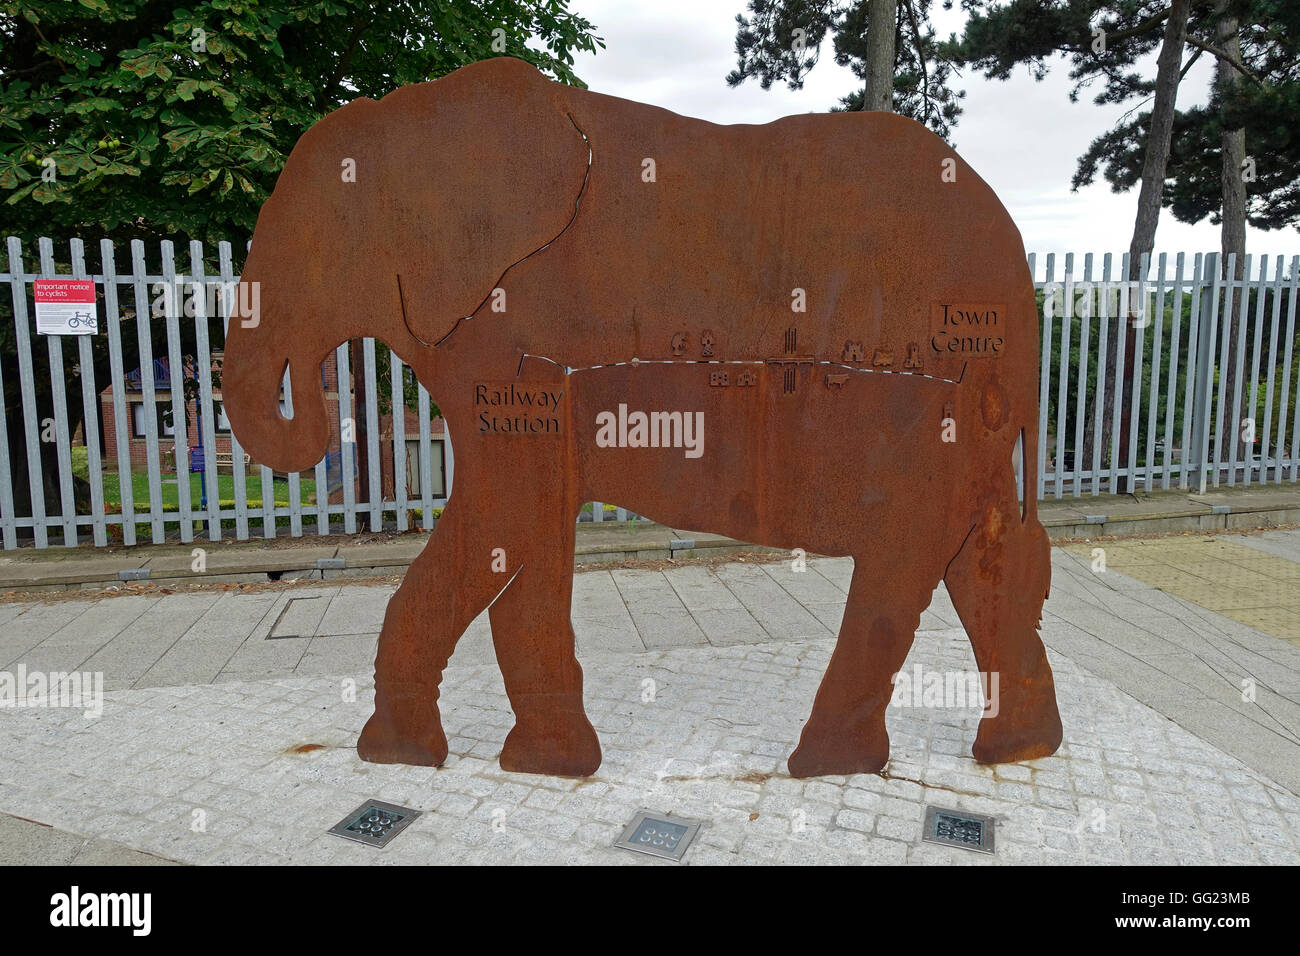 Une sculpture de l'éléphant d'acier est un signe de diriger les piétons au centre-ville de Colchester North rail station, Essex, Angleterre Banque D'Images